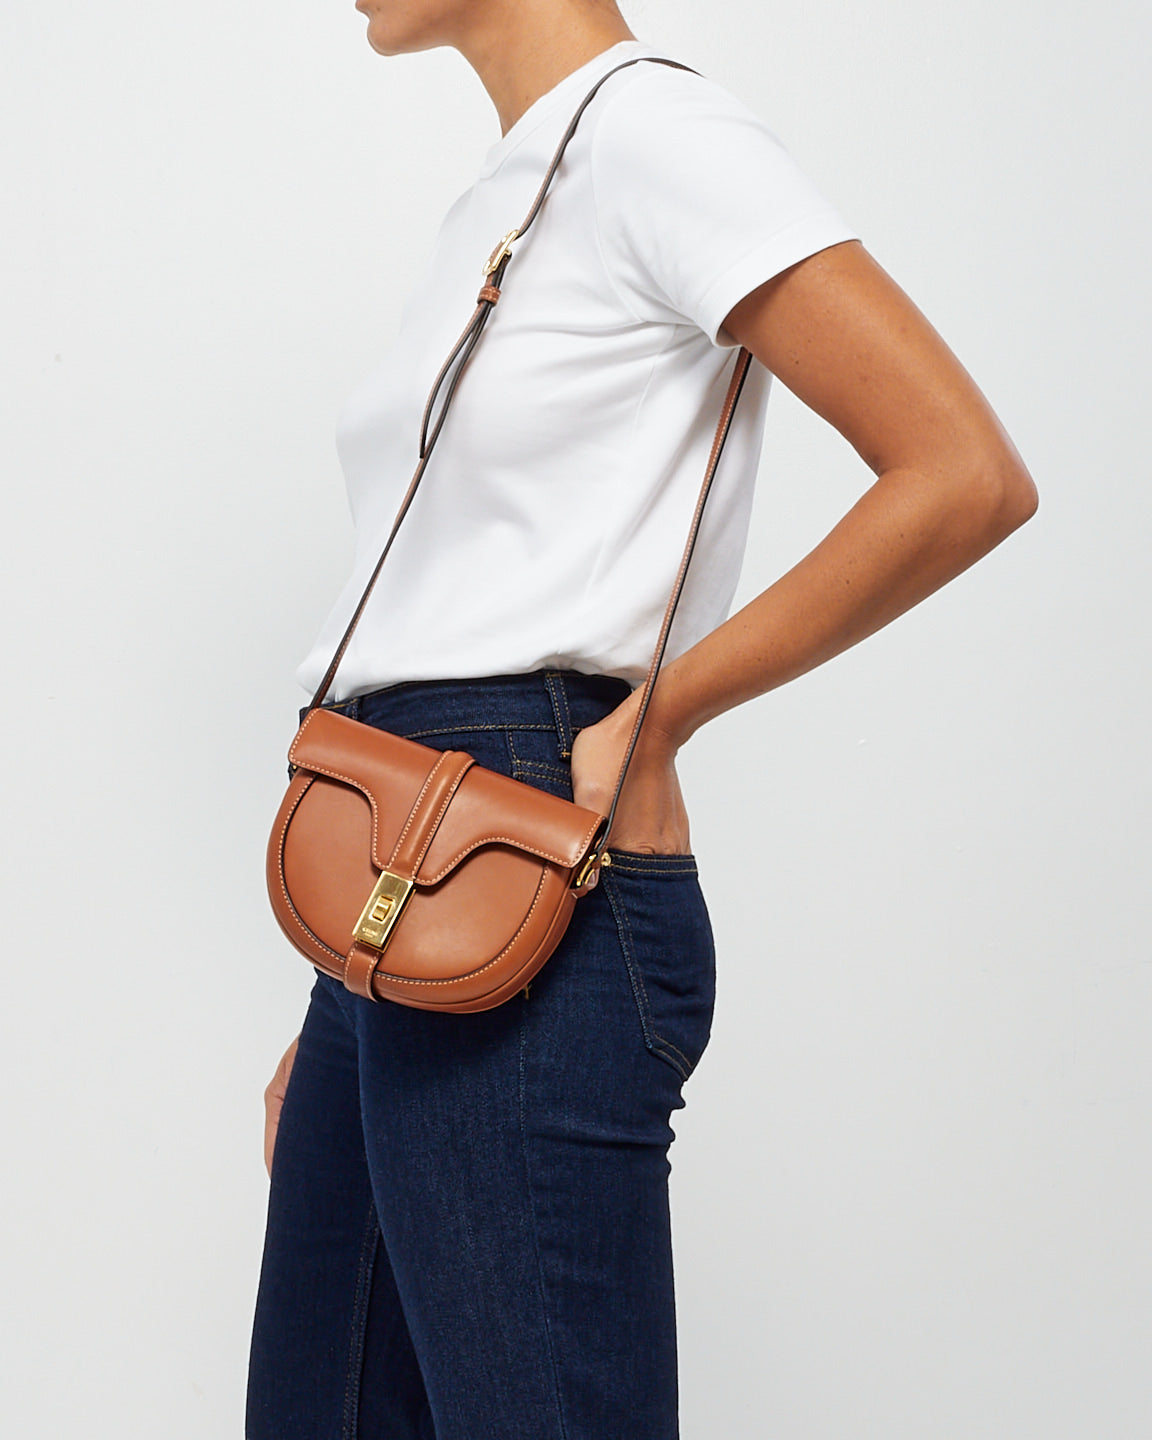 Celine Tan Leather Small Besace 16 Shoulder Bag